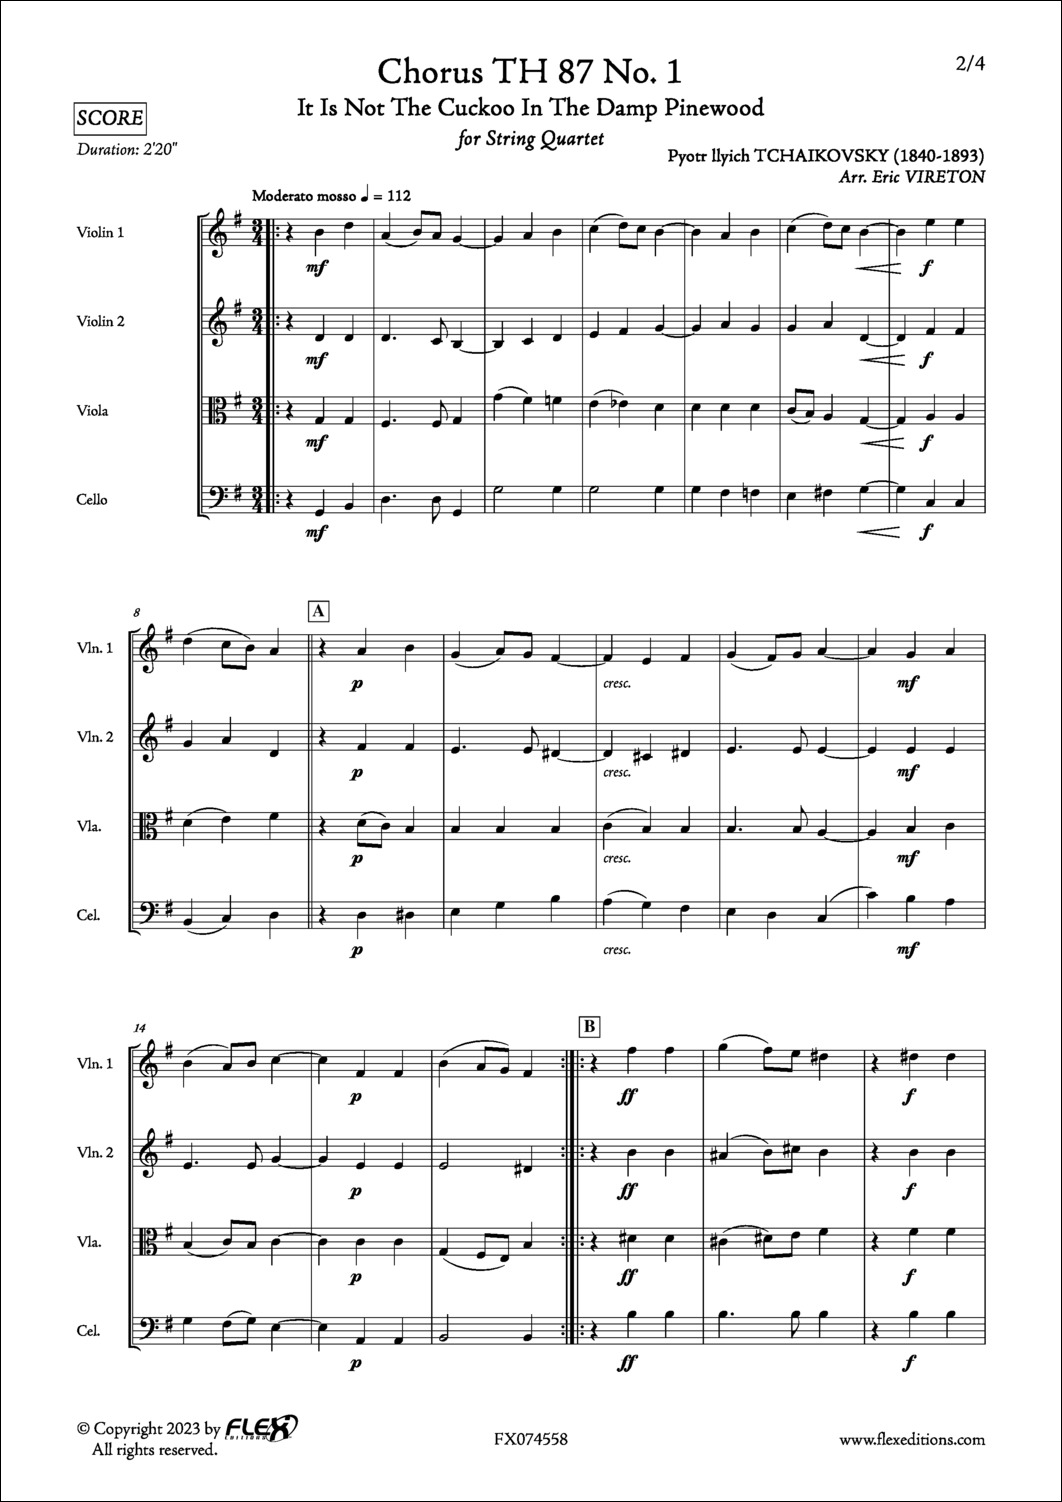 Chorus TH 87 No. 1 - P. I. TCHAIKOVSKY - <font color=#666666>String Quartet</font>